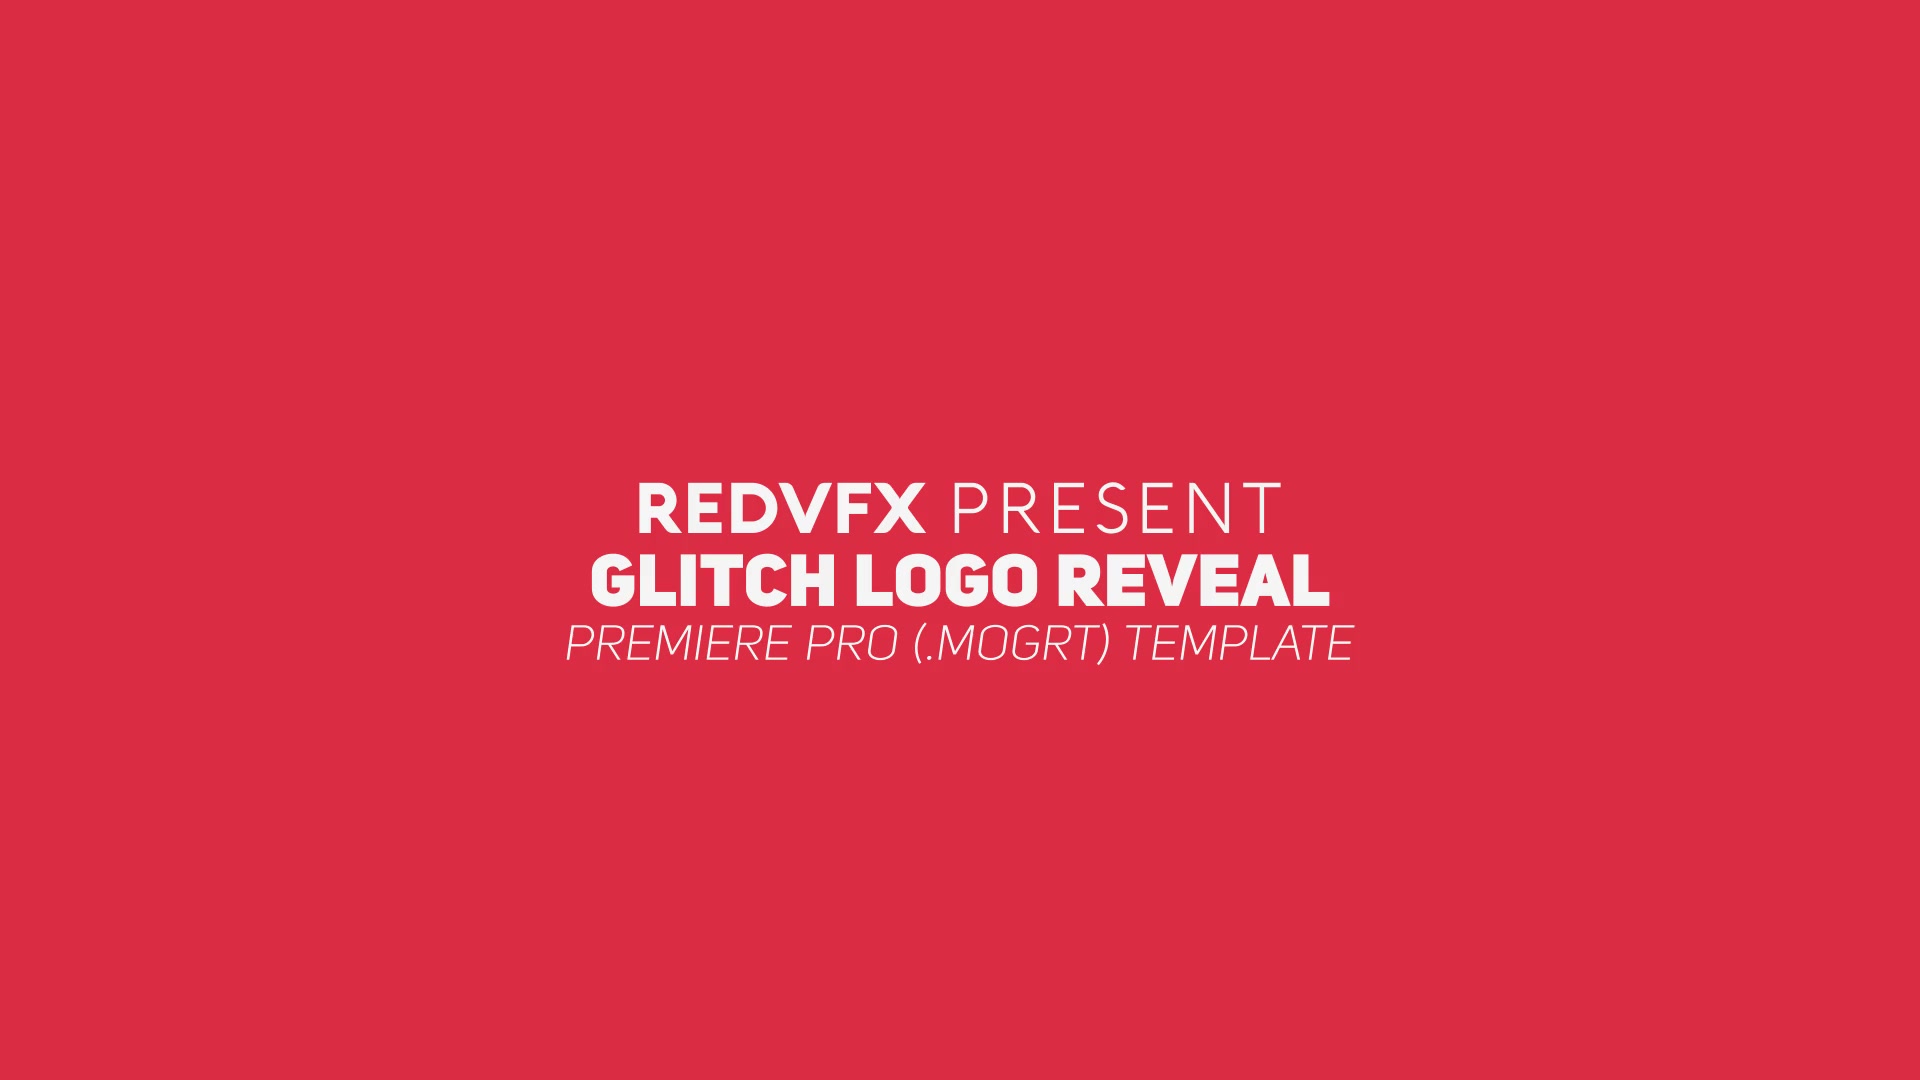 Glitch Logo Reveal Premiere Pro Videohive 23334229 Premiere Pro Image 3